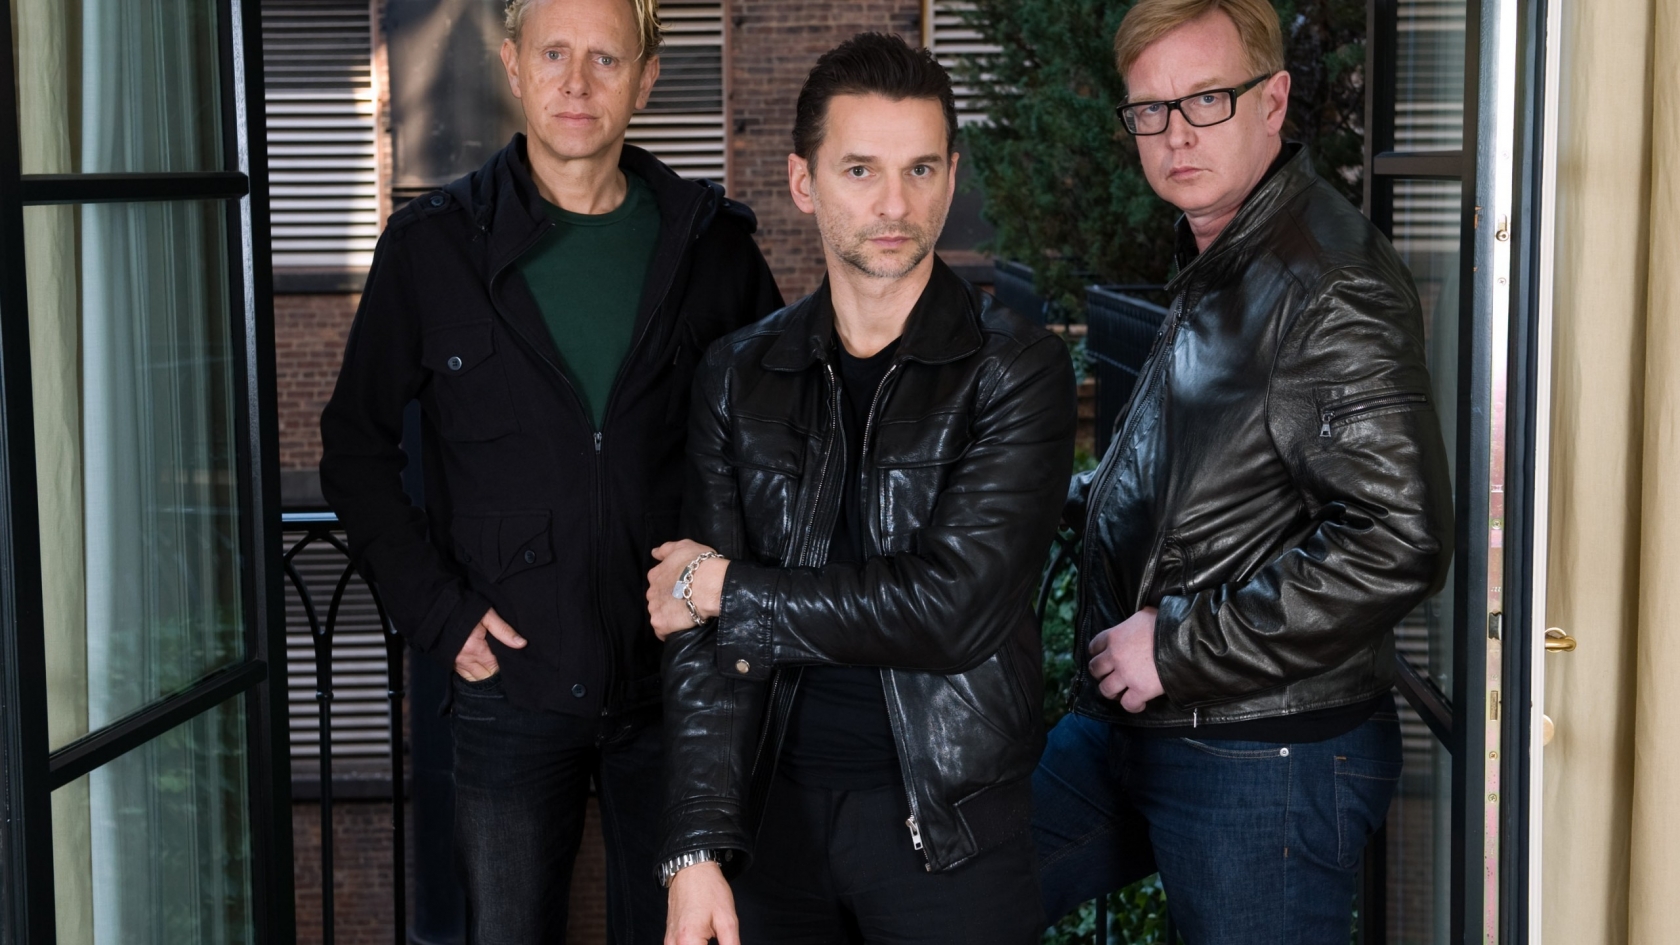 Depeche Mode Members Poster for 1680 x 945 HDTV resolution